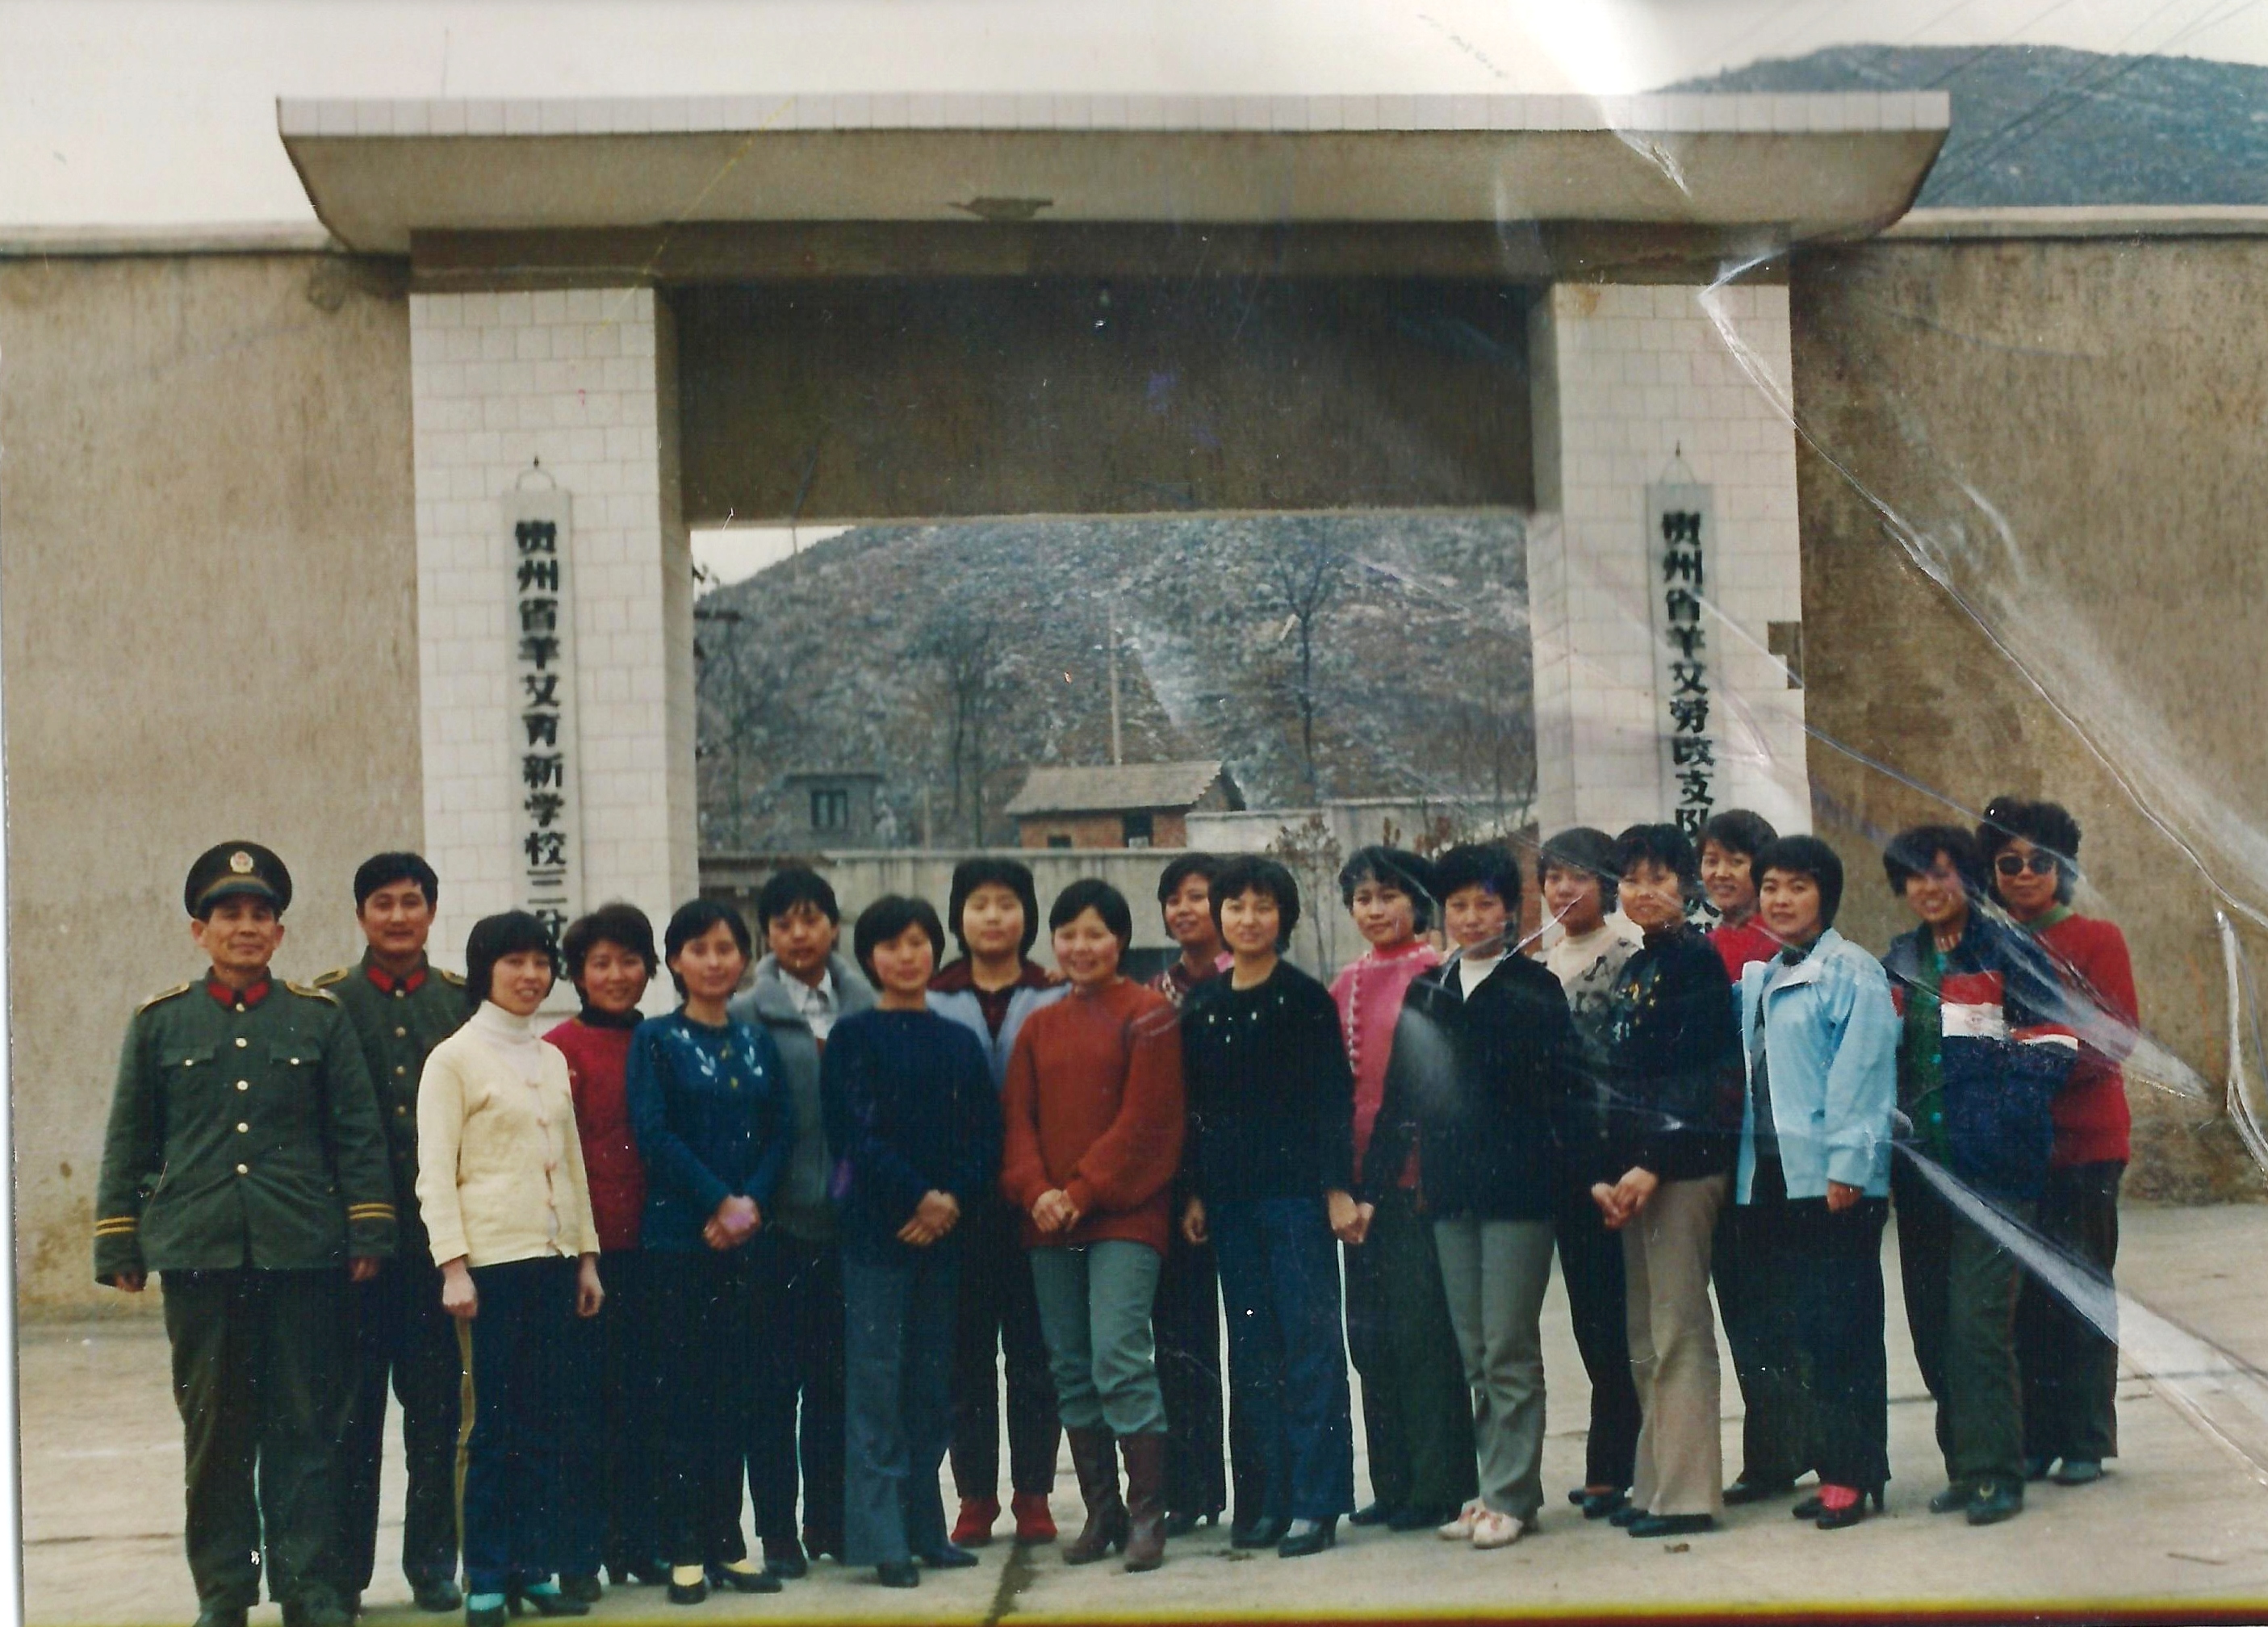 1989年春節 女劳改人员宣传队将到其他劳改场所表演前的合影（中间黄衣服者是张菁）。攝於貴州羊艾女子勞改茶場